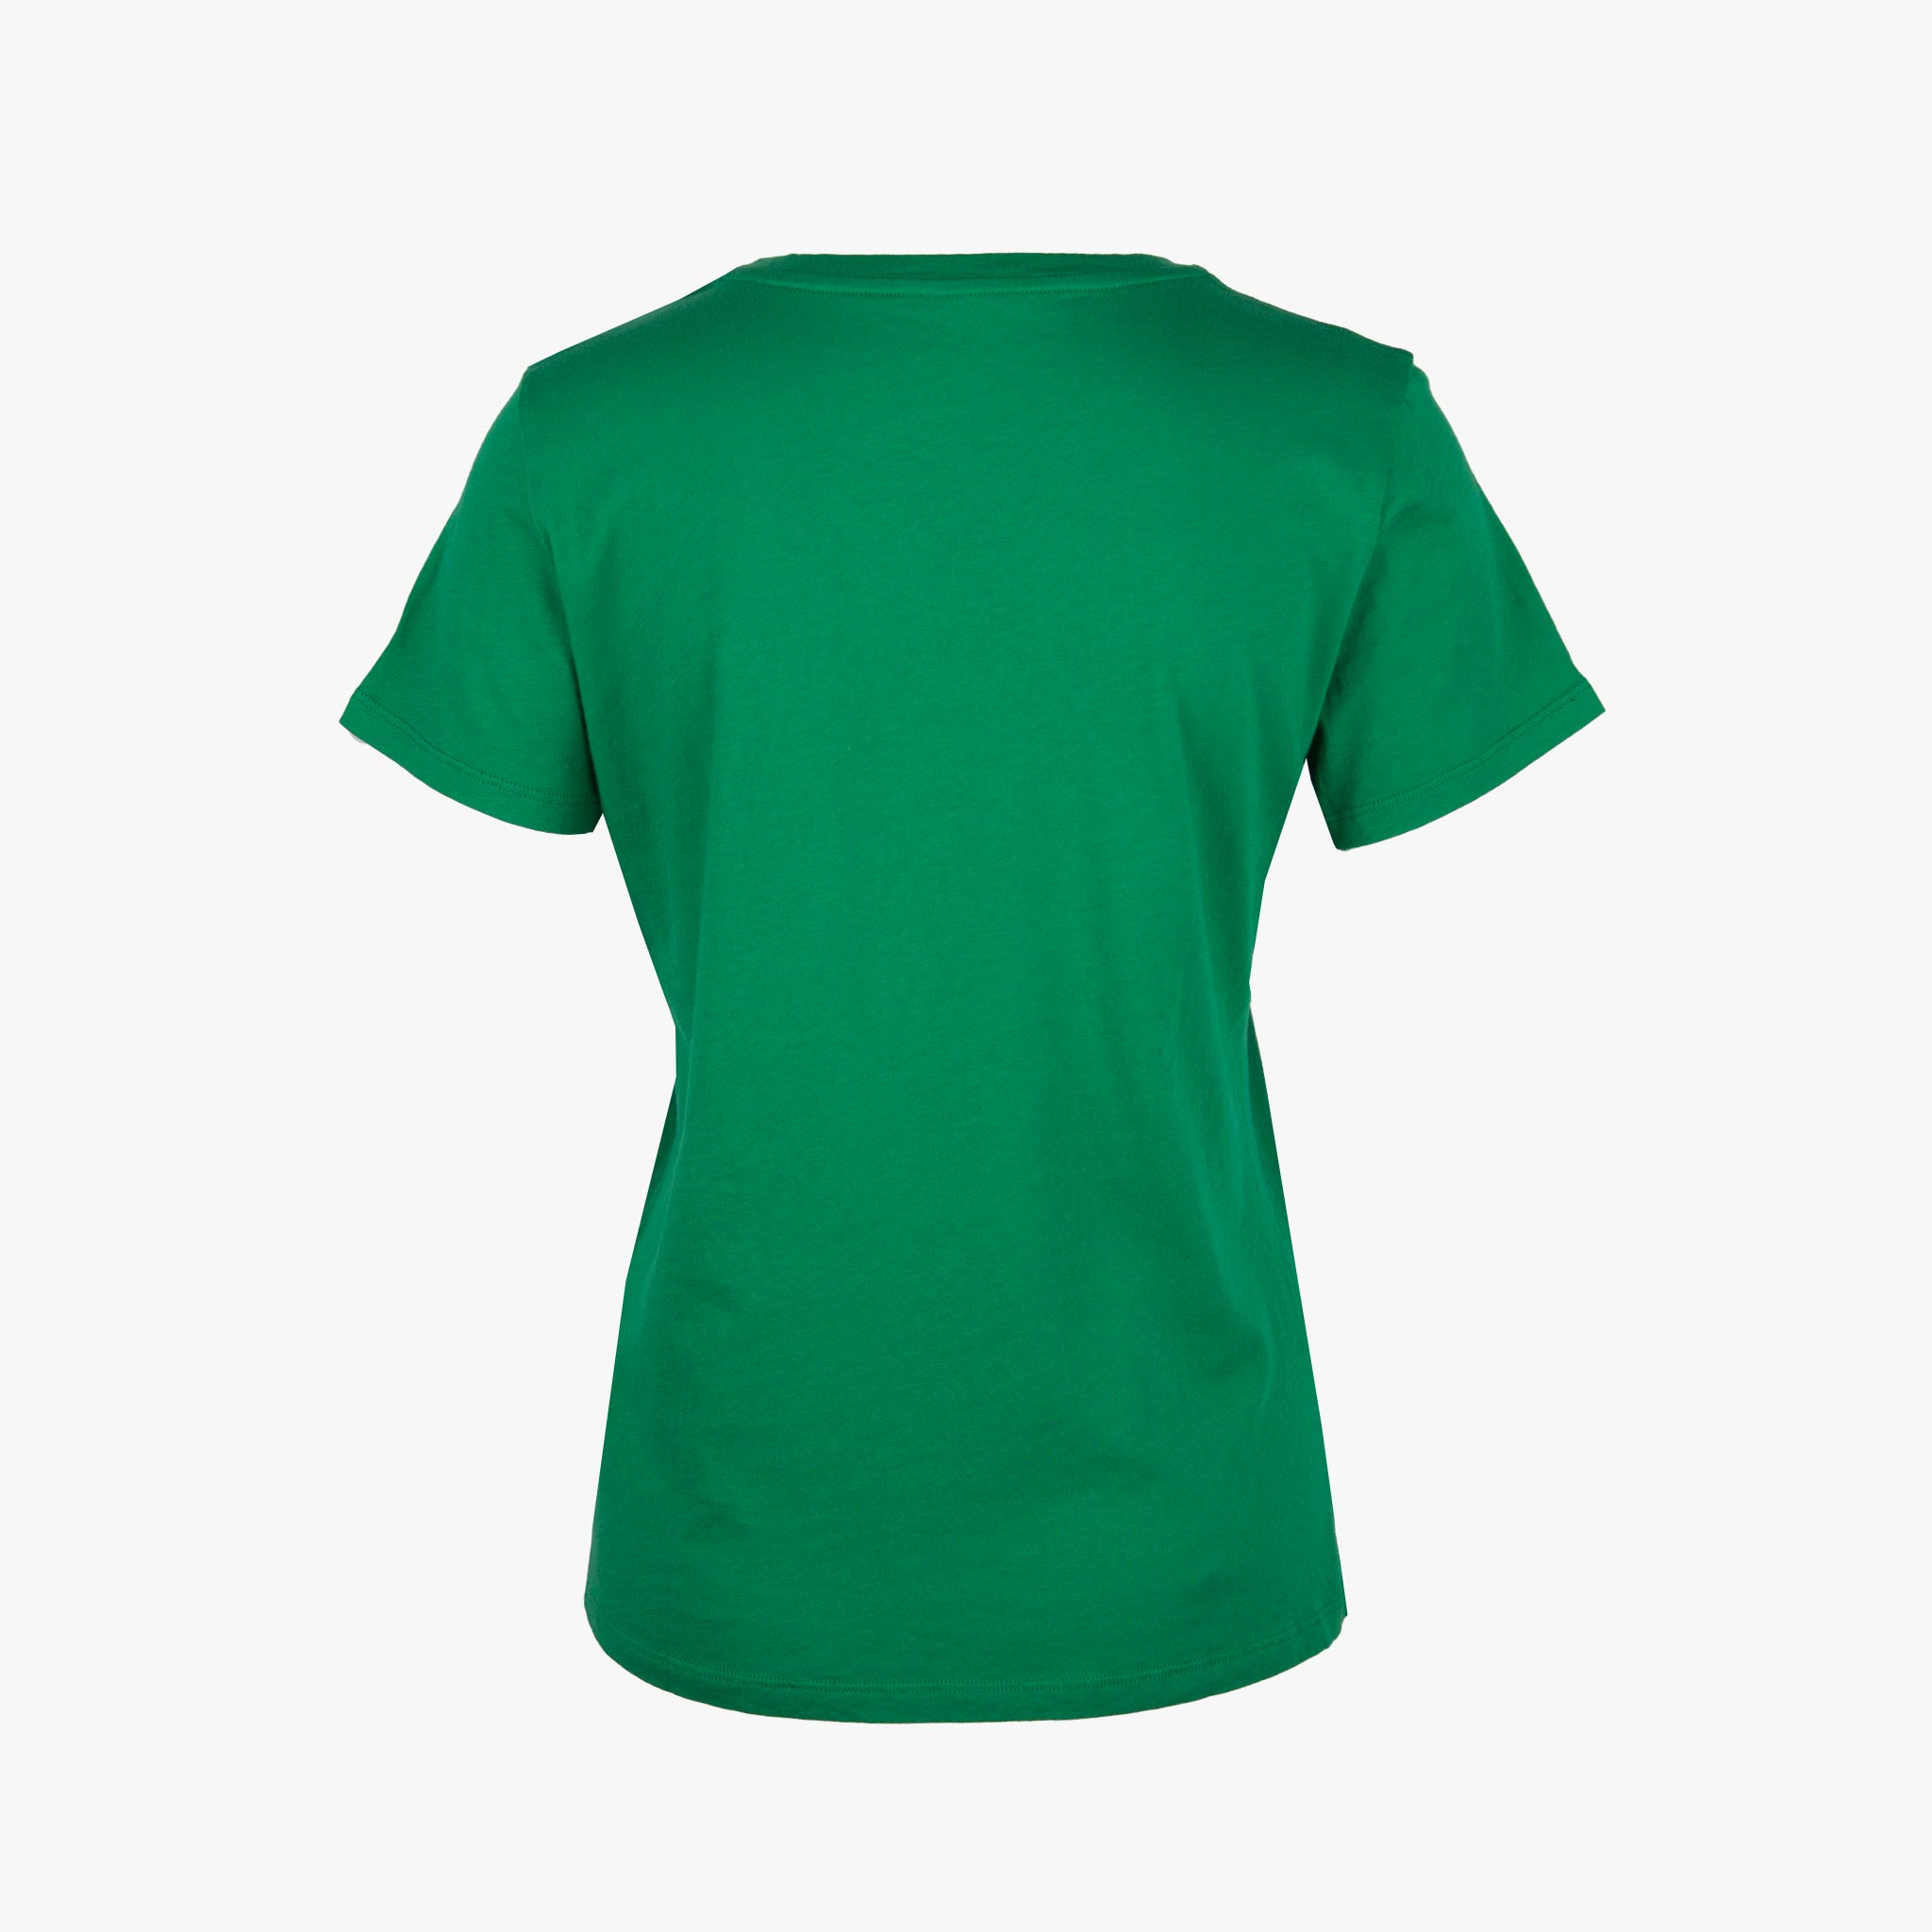 Majestic Basic Shirt Cotton | grün